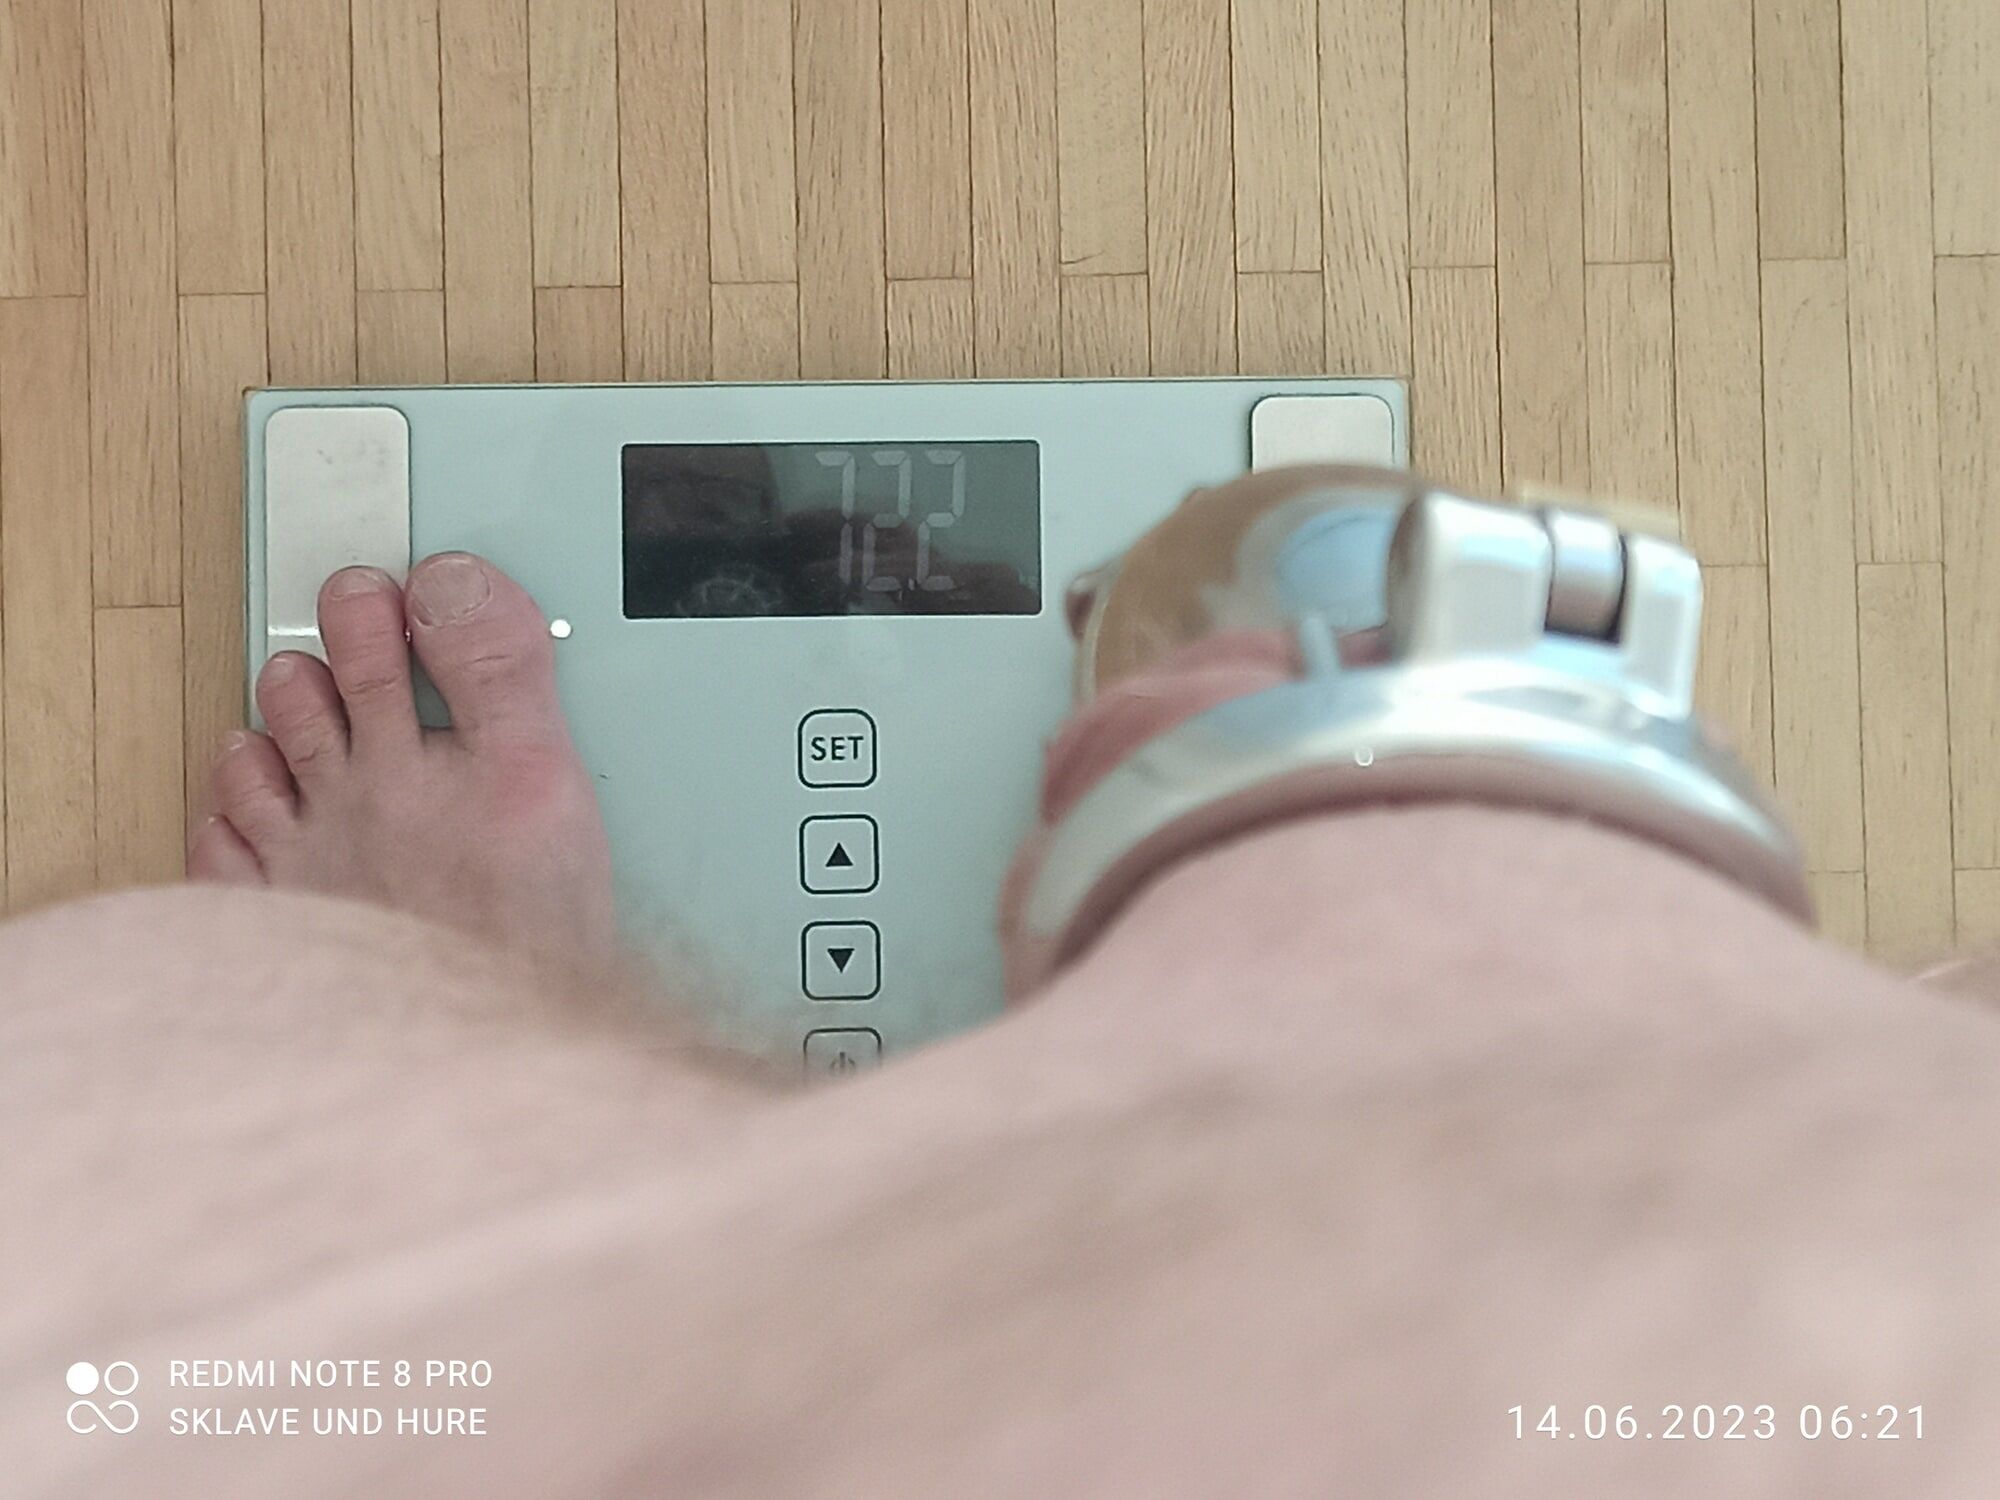 weighing , cagecheck, 14.06.2023